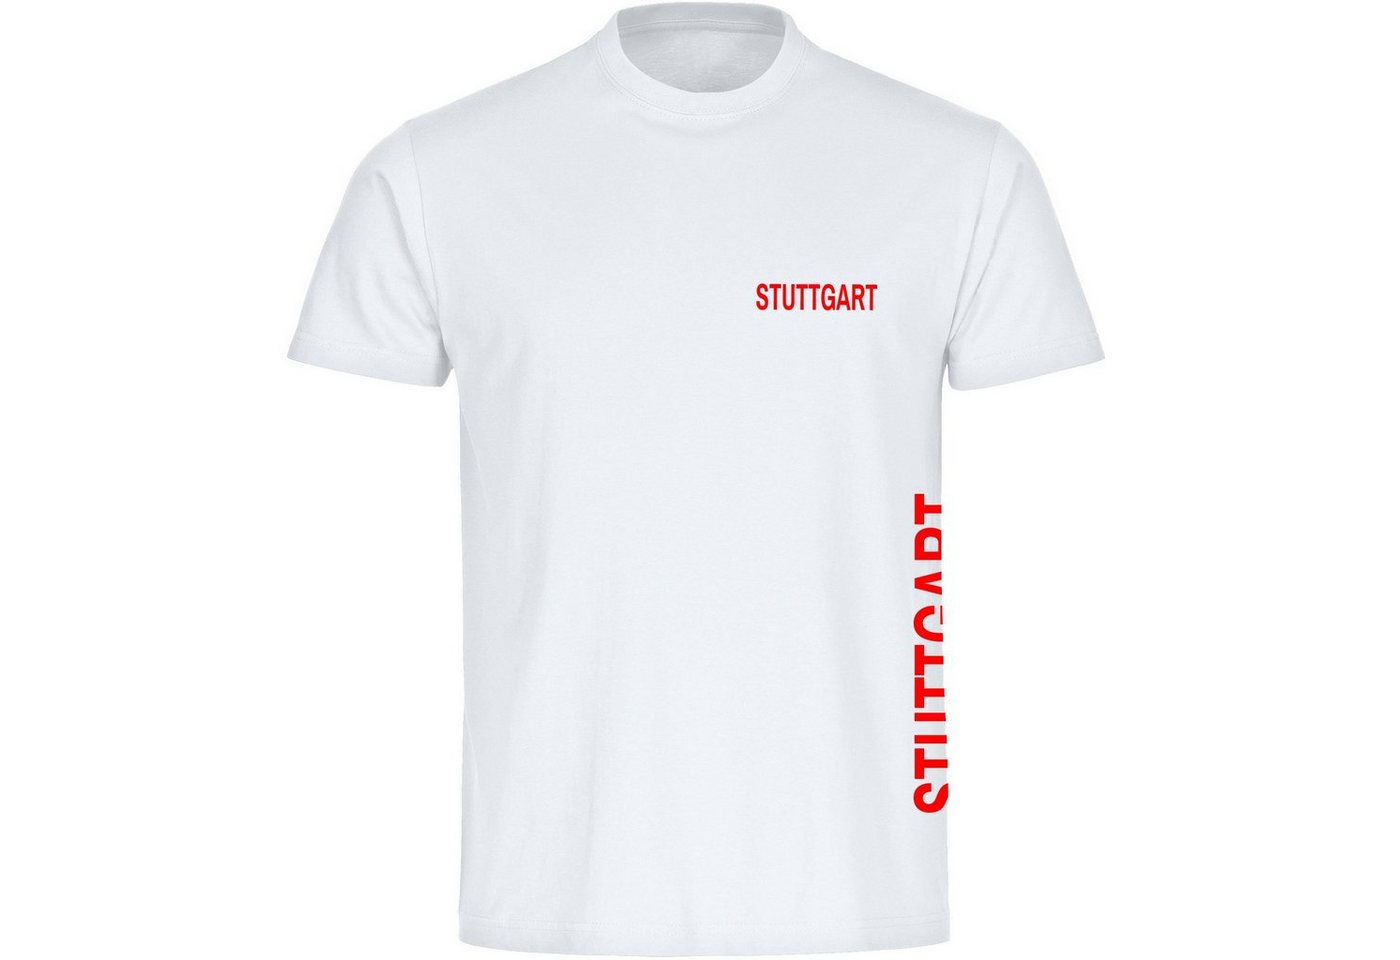 multifanshop T-Shirt Kinder Stuttgart - Brust & Seite - Boy Girl von multifanshop